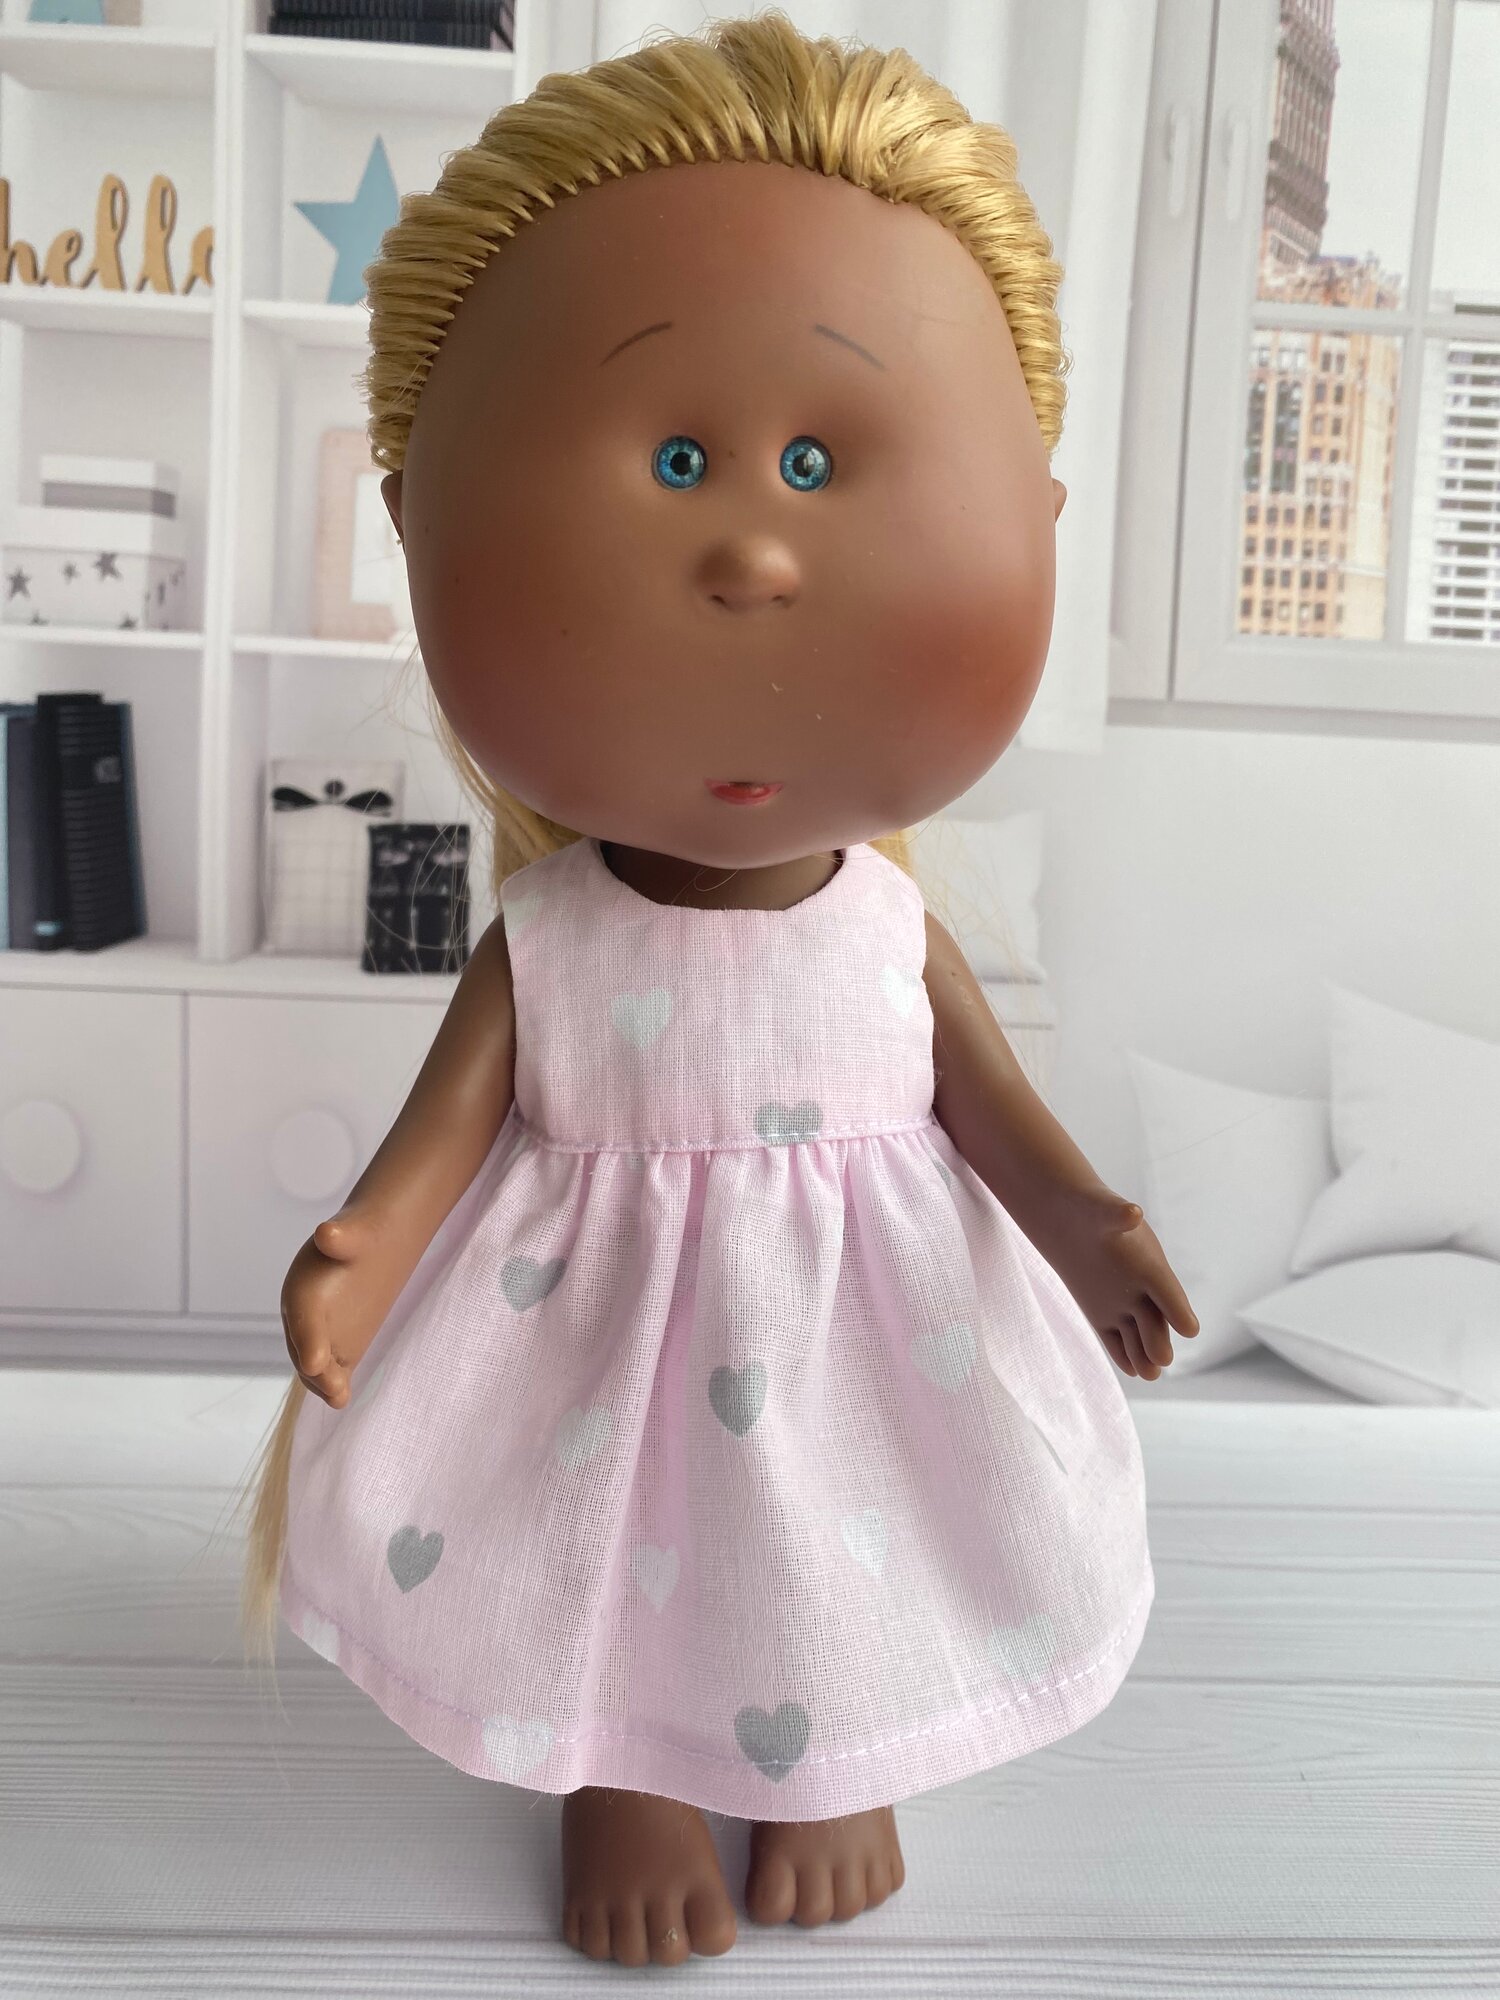 Платье на куклу Nines MIA, платье для куклы Миа, высотой 30 см